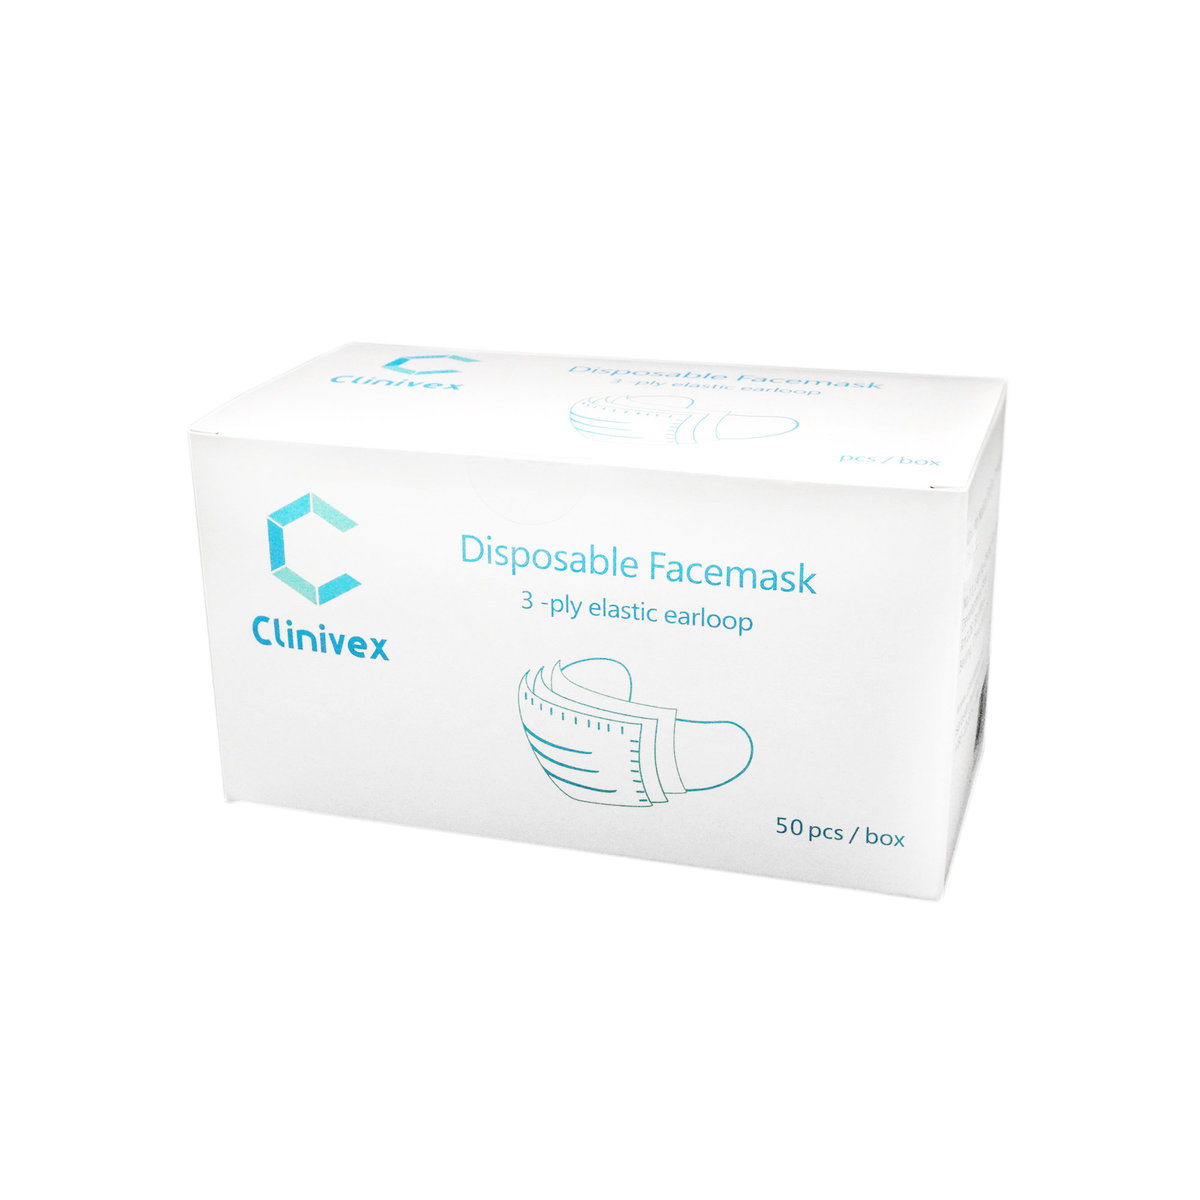 Clinivex 一次性防護口罩 FDA 認證 - 三層 (50個) 非獨立包裝 (平行進口貨)